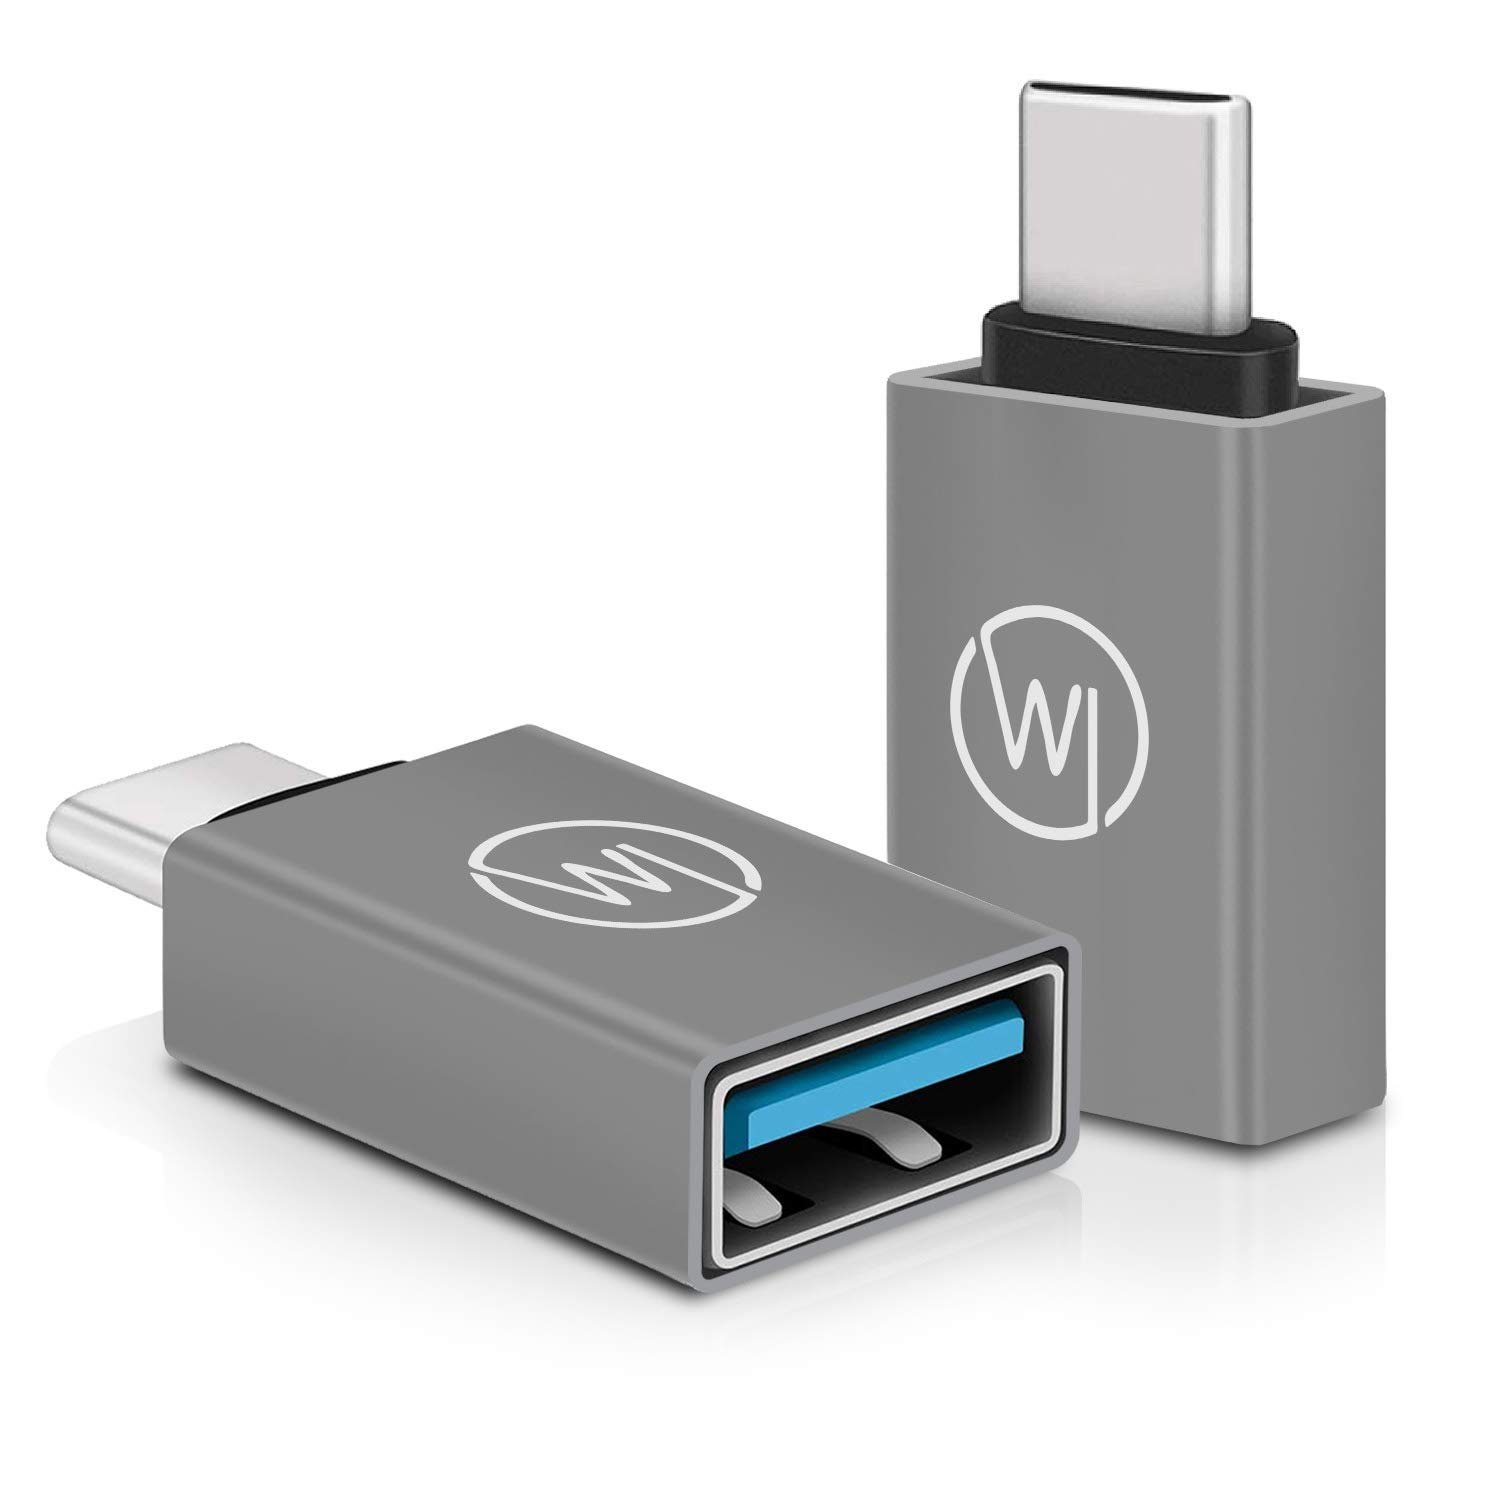 Wicked Chili »2x USB-C OTG Adapter für iPad Pro / Air, MacBook« USB-Adapter  USB-C zu USB-A, für iPad Pro (2018 2020 2021), Air 2021 / Macbook und  Macbook Air mit USB C